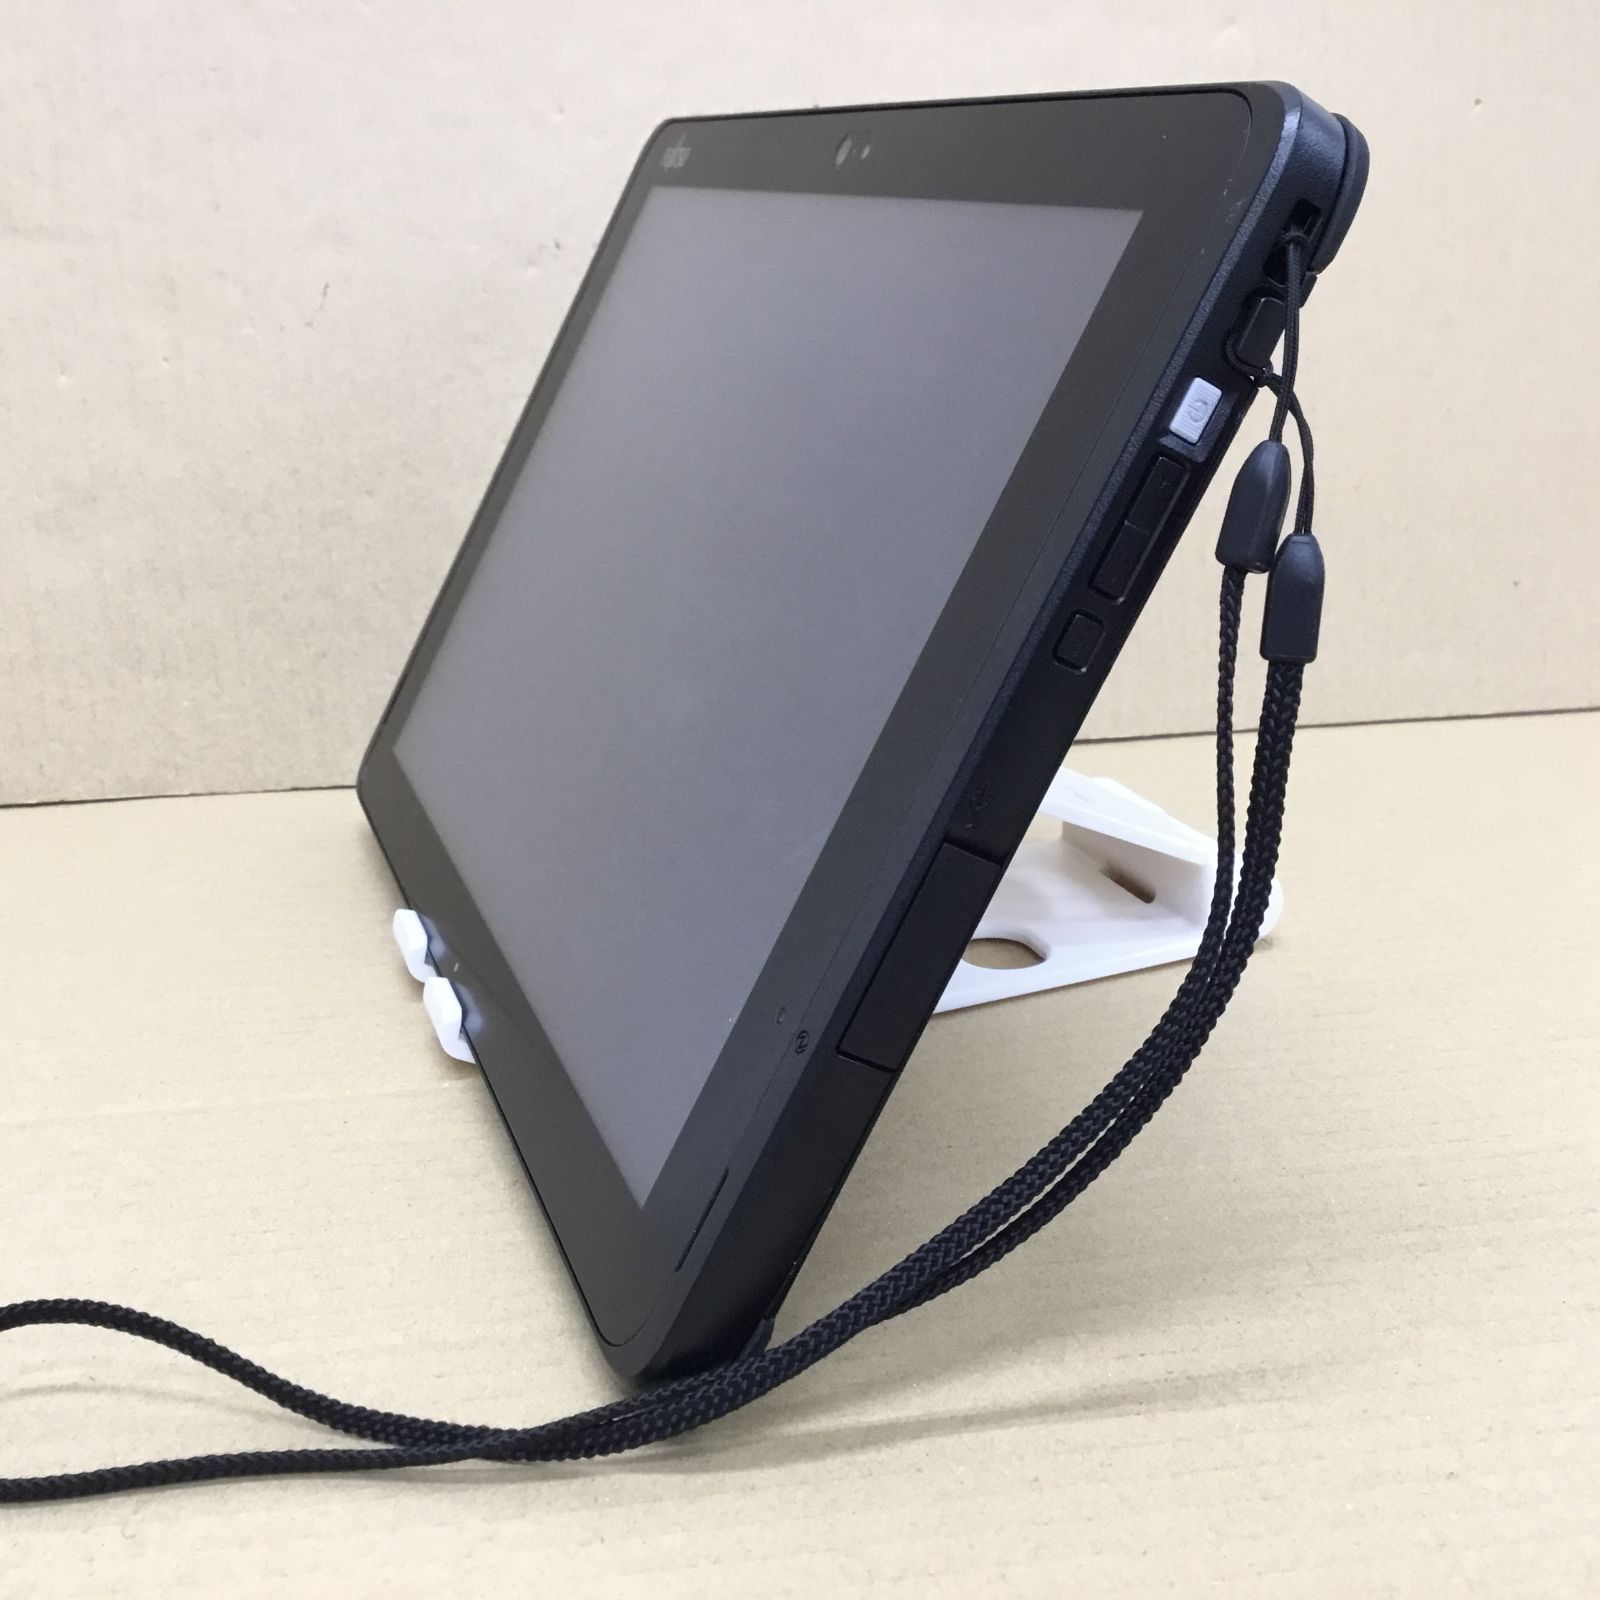 富士通 タブレット Q507 PE ATOM(Z8550)-1.44GHZ 4GB 64GB 10.1インチ 